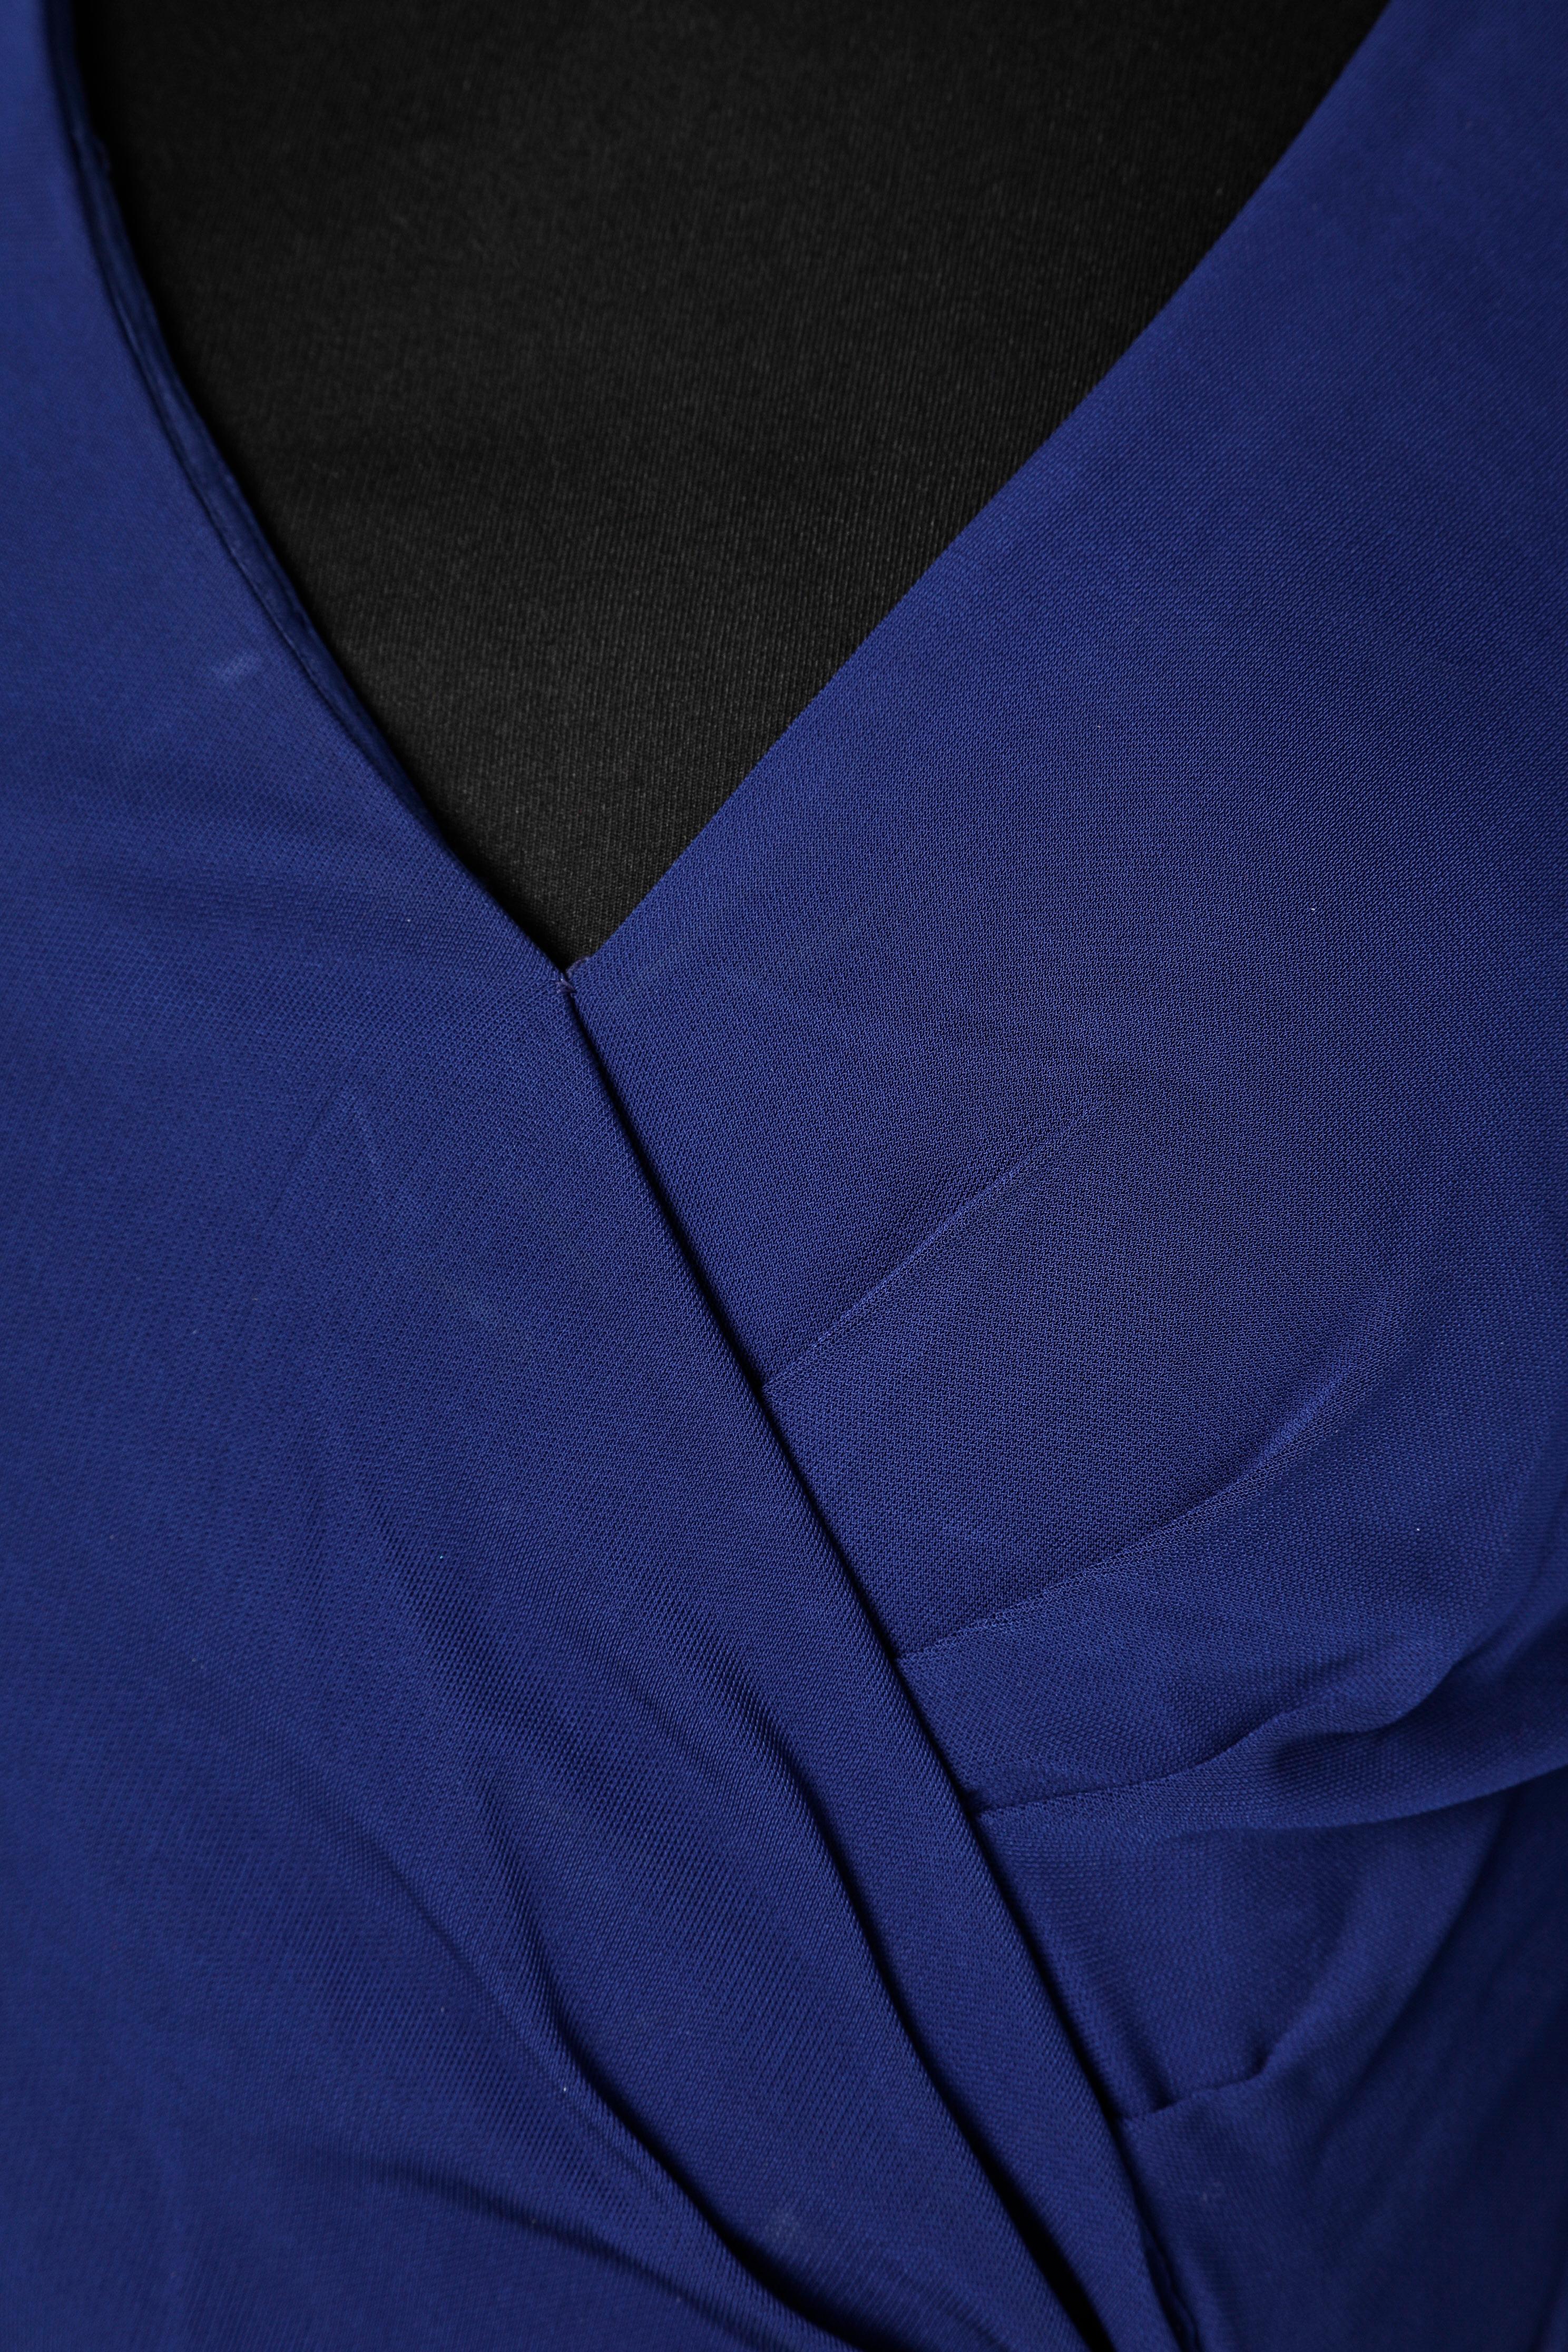 Robe de cocktail en jersey enveloppante avec embellissement en strass. Composition du tissu : 100% rayonne. Doublure. Fermeture éclair sur le côté gauche. Manches raglan.
TAILLE 42 (It) 38 (Fr) 8 (US) Petite taille.